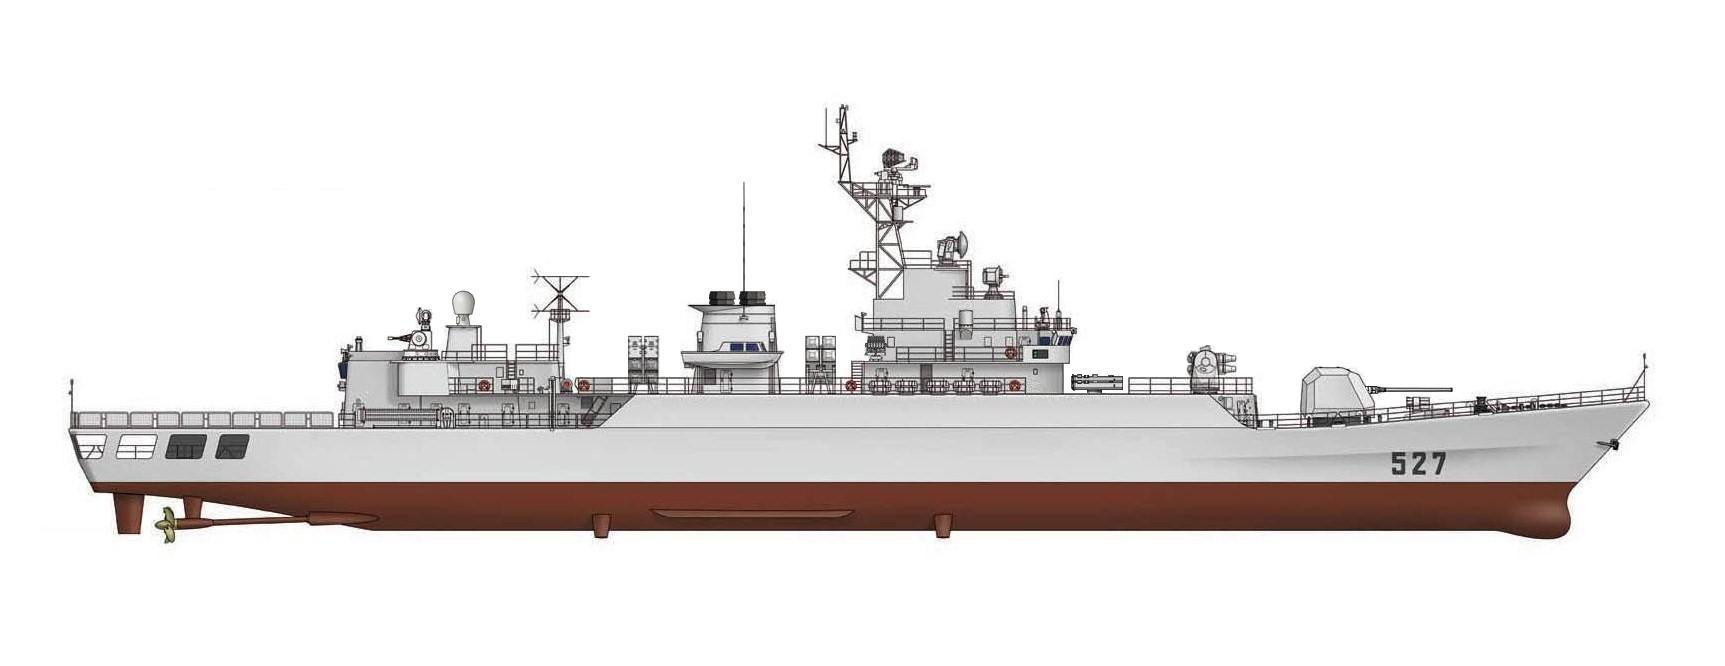 053h3型护卫舰2002年时造价5.5亿